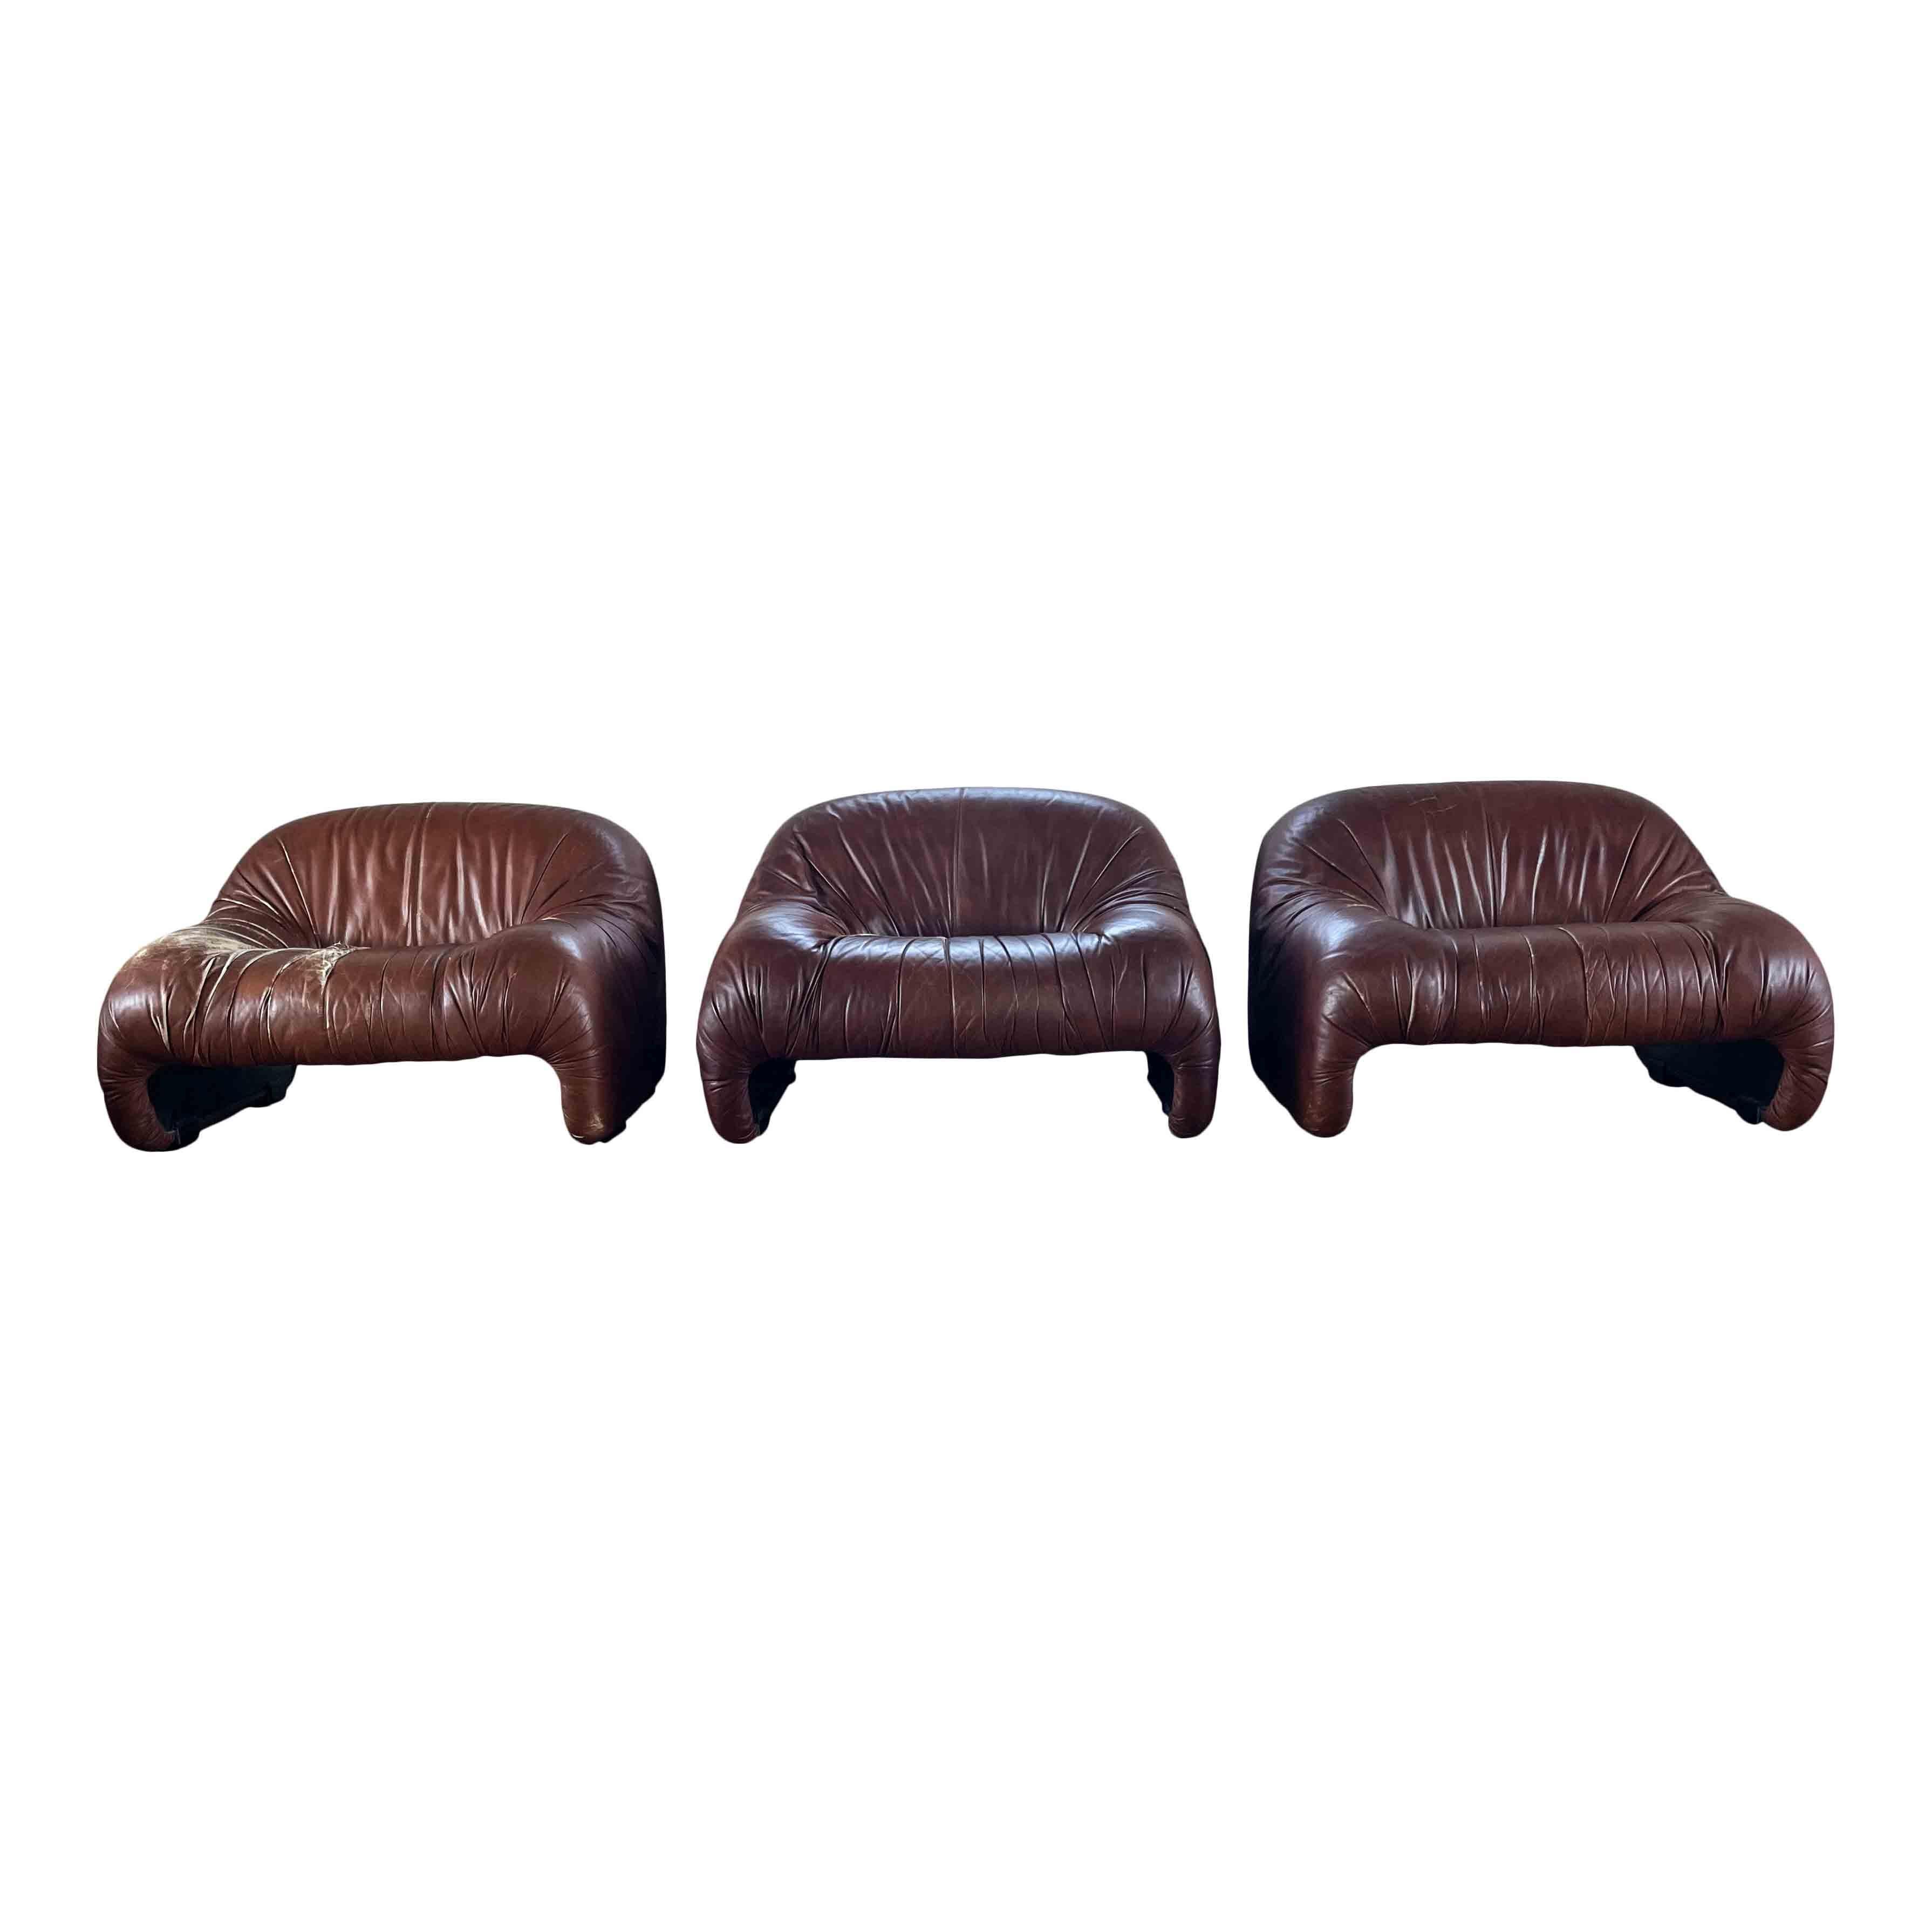 Ensemble composé de trois chaises longues Bonanza, conçues par Afra et Tobia Scarpa et produites par le fabricant italien C&B Italia (aujourd'hui B&B Italia), en 1970.

L'ensemble est doté d'un revêtement en cuir brun chocolat, d'un padding en